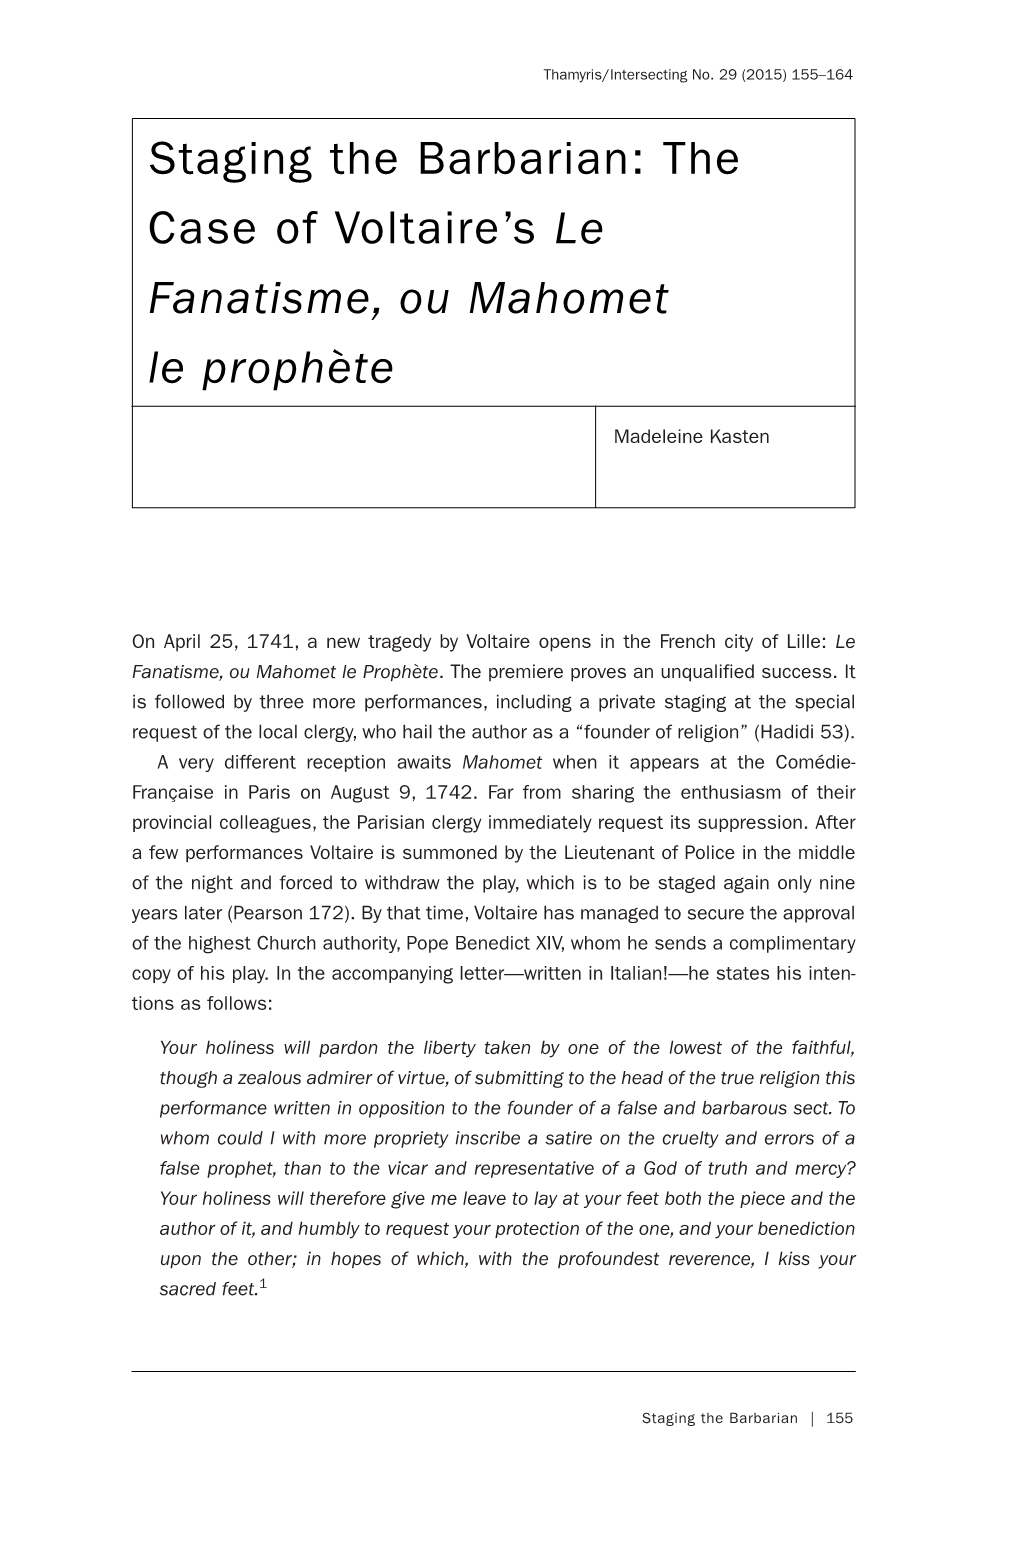 The Case of Voltaire's Le Fanatisme, Ou Mahomet Le Prophète